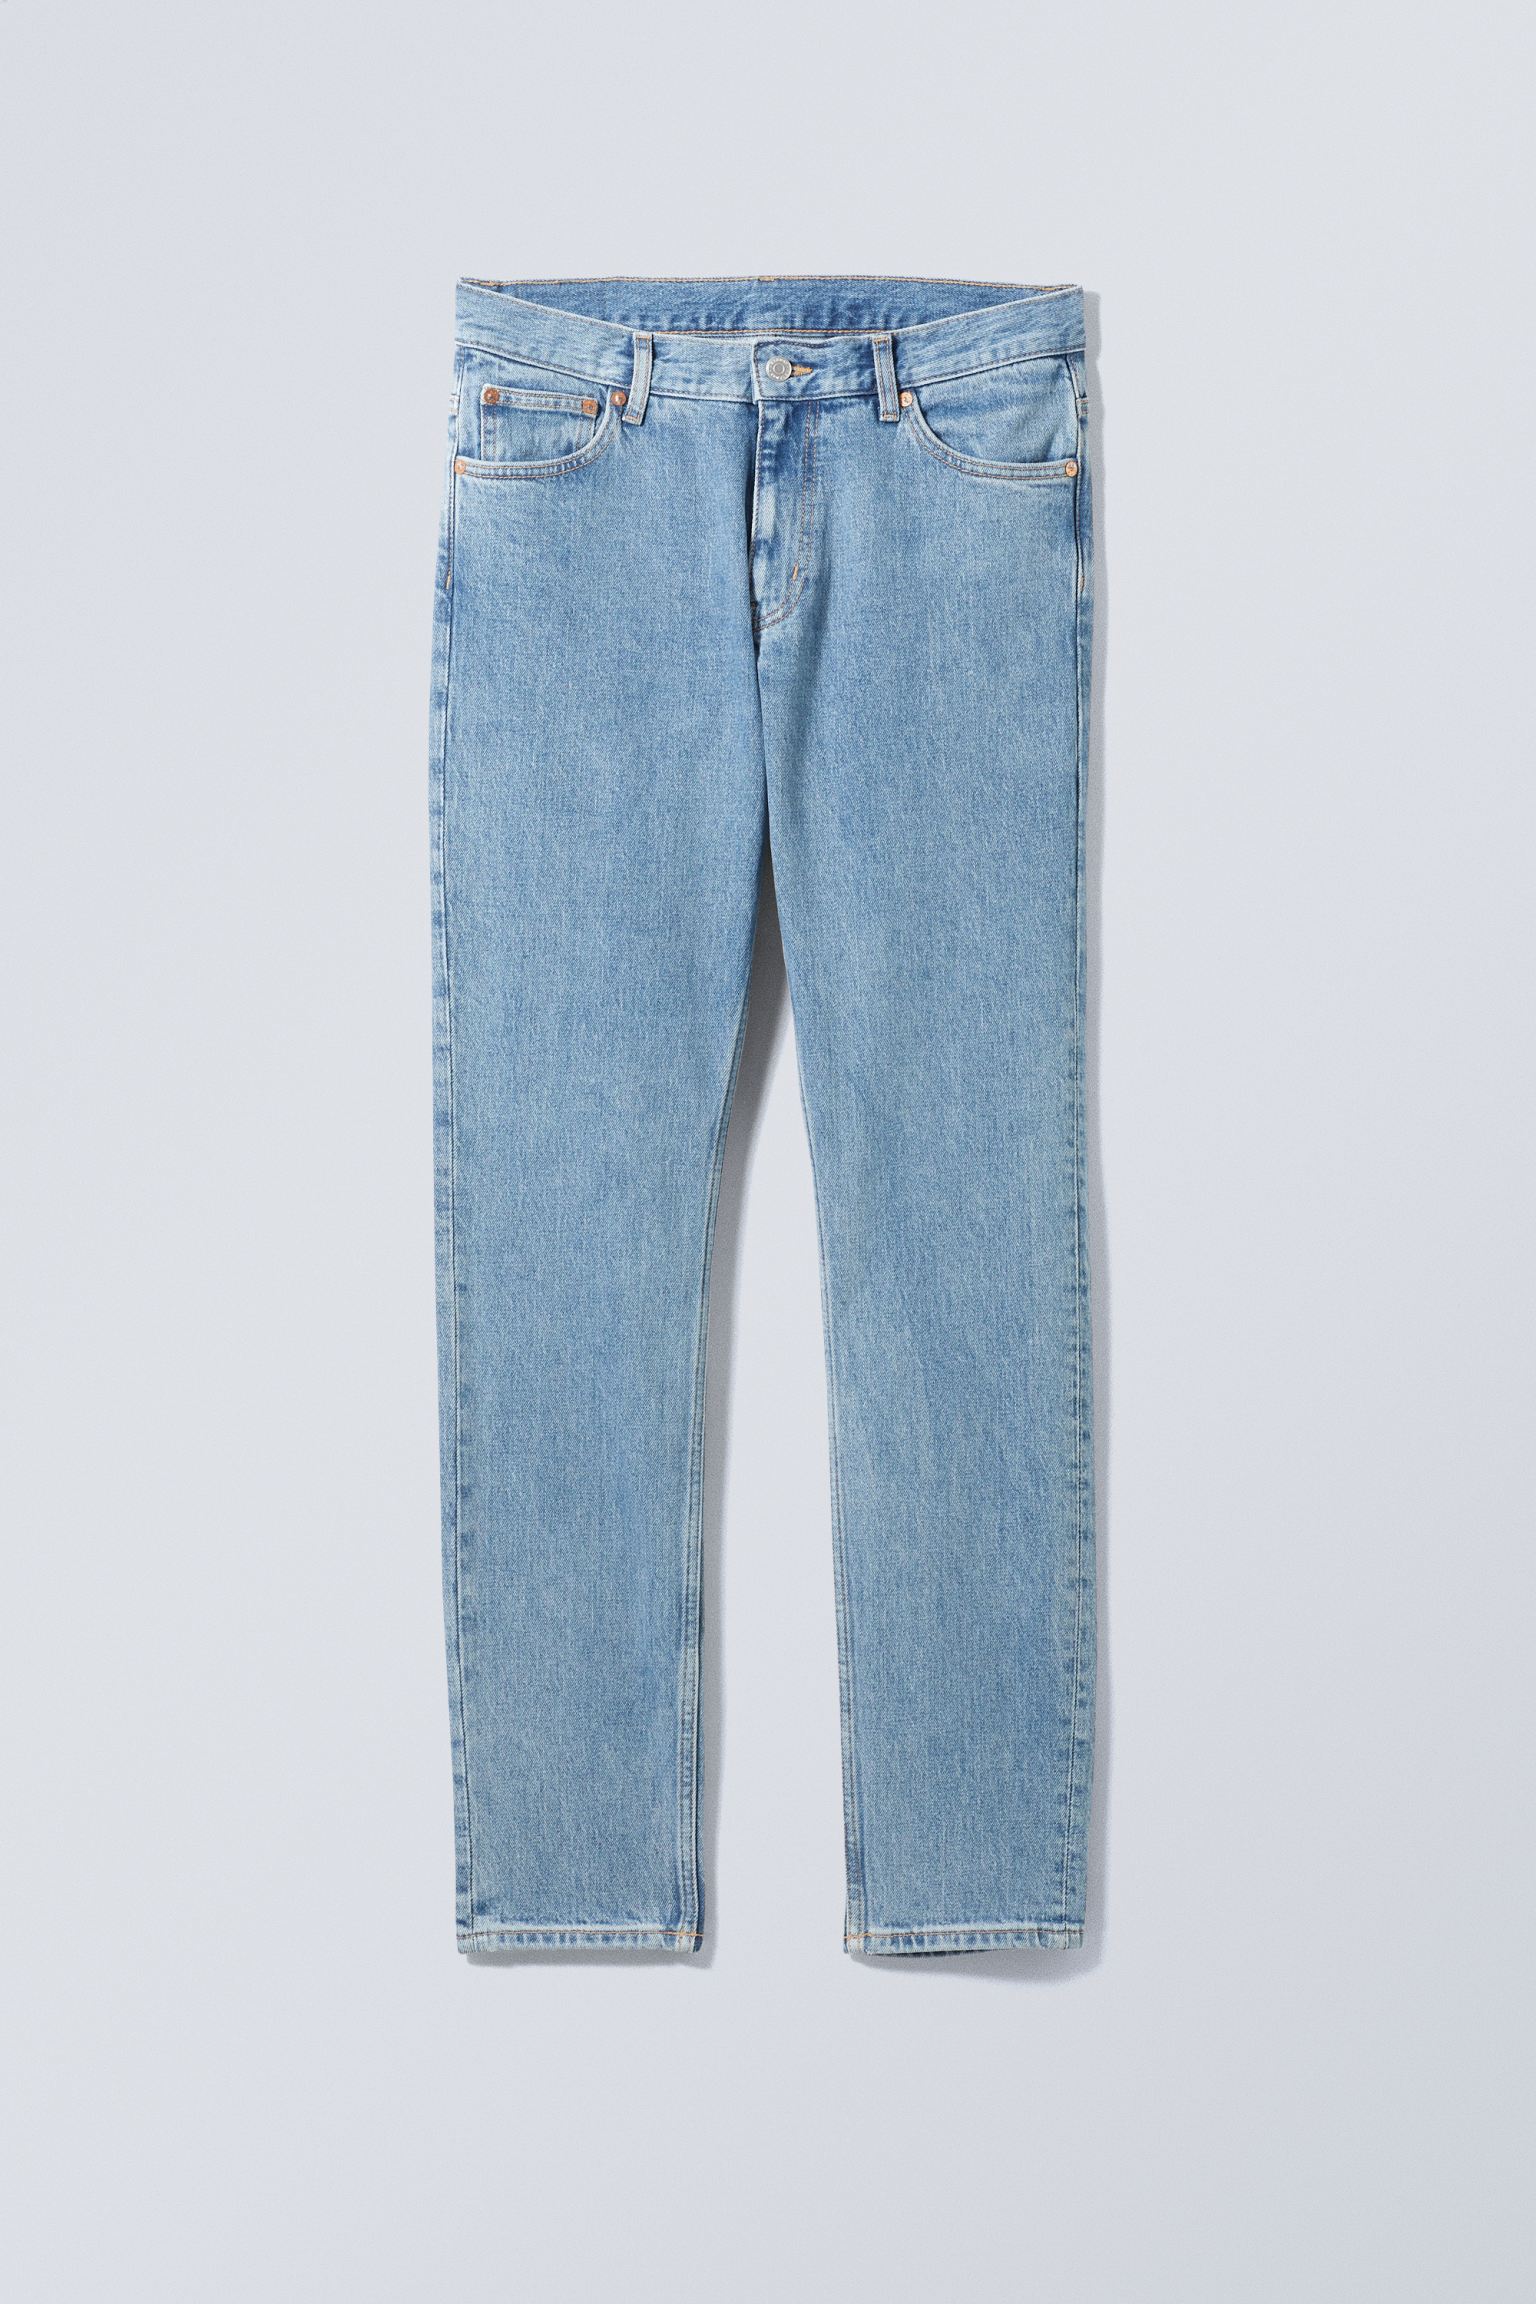 Weekday Schmale Jeans Sunday mit konisch zulaufendem Bein Tiefblau, Skinny in Größe 27/32. Farbe: Cerulean blue von Weekday